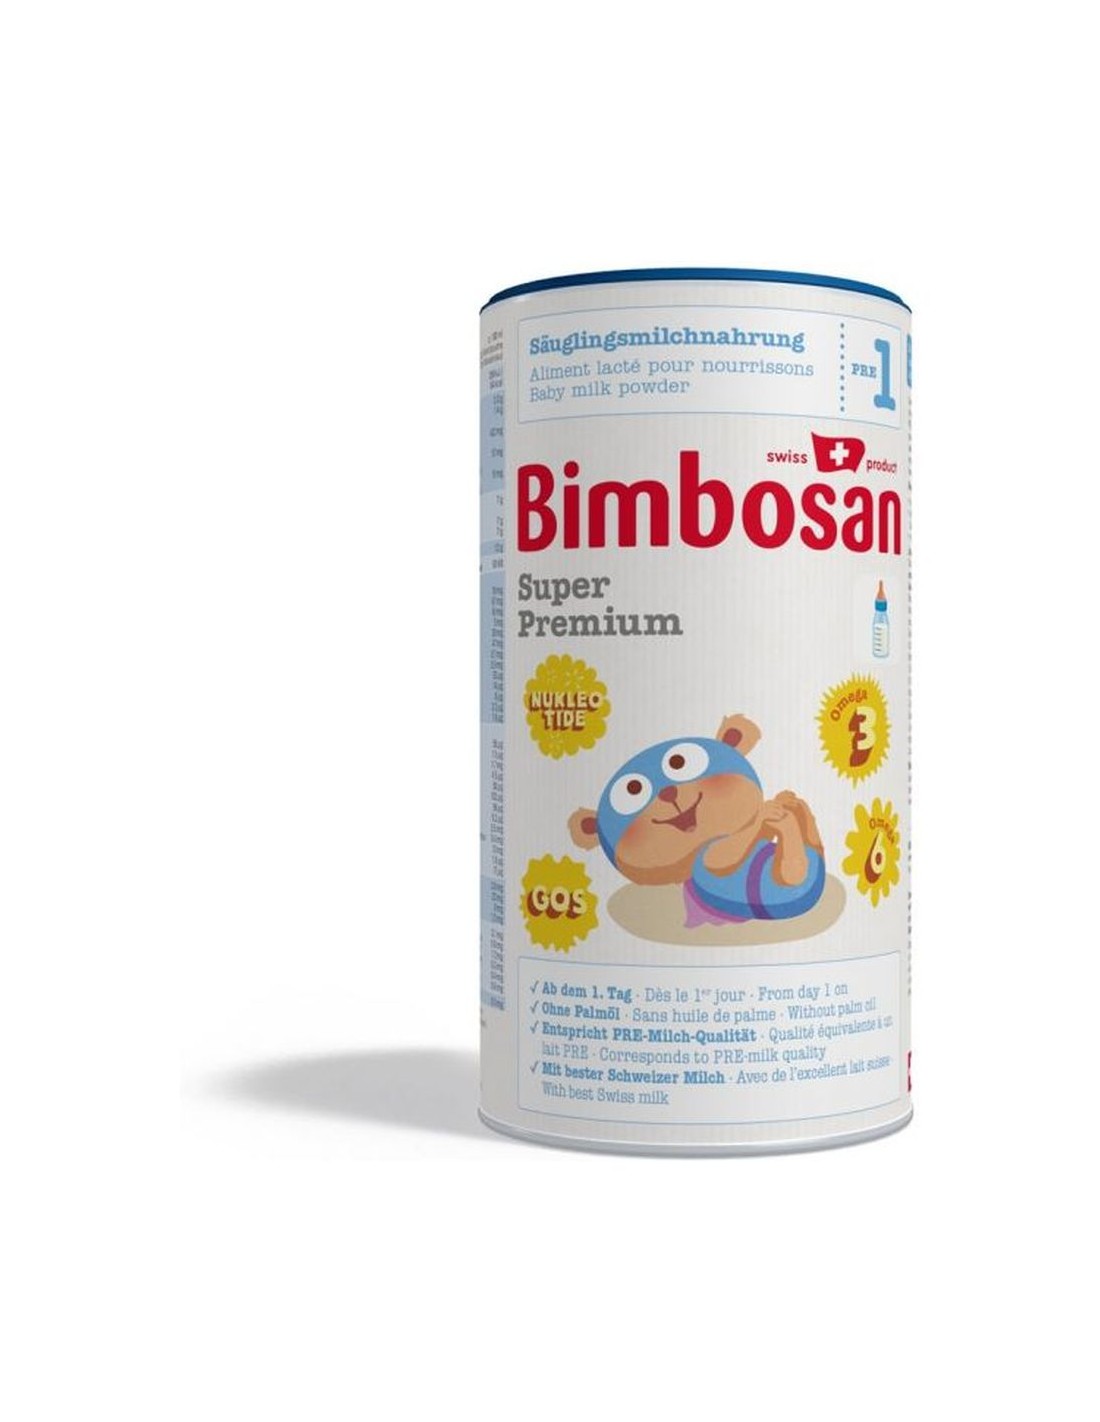 Bimbosan : Tous les Produits Bimbosan à Prix Bas